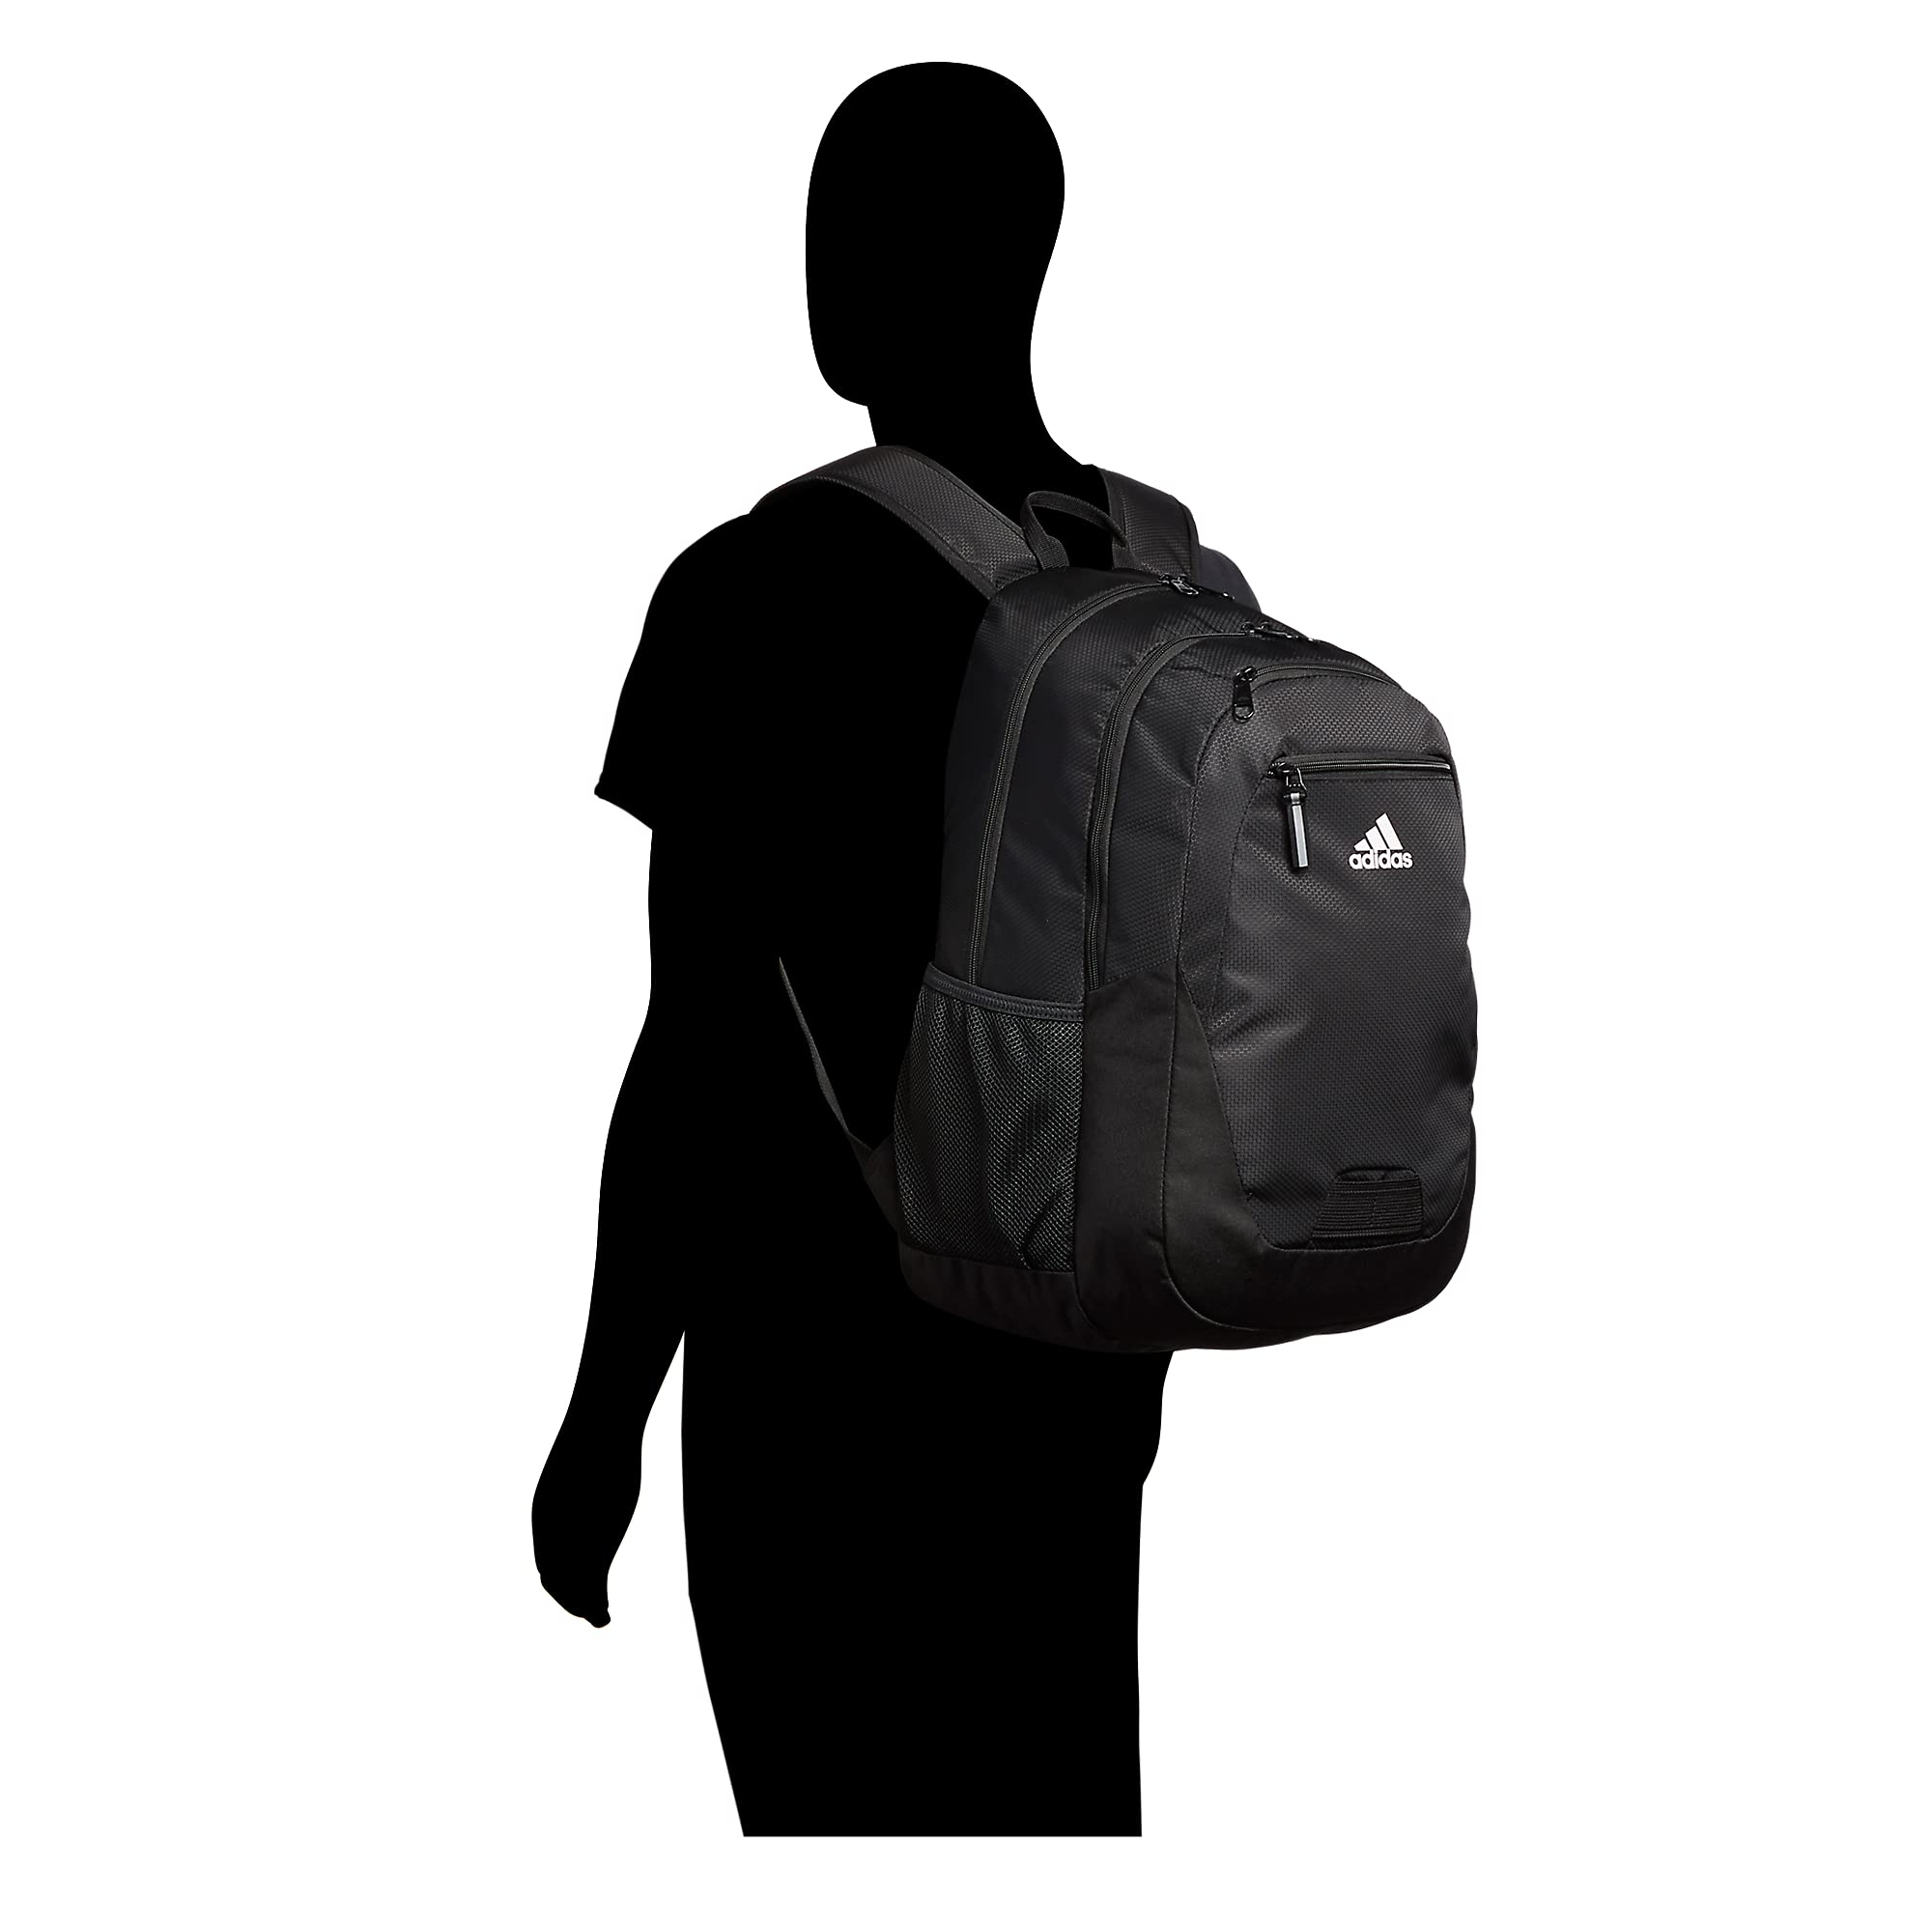 adidas Foundation 6 Backpack, Black/White, One Size